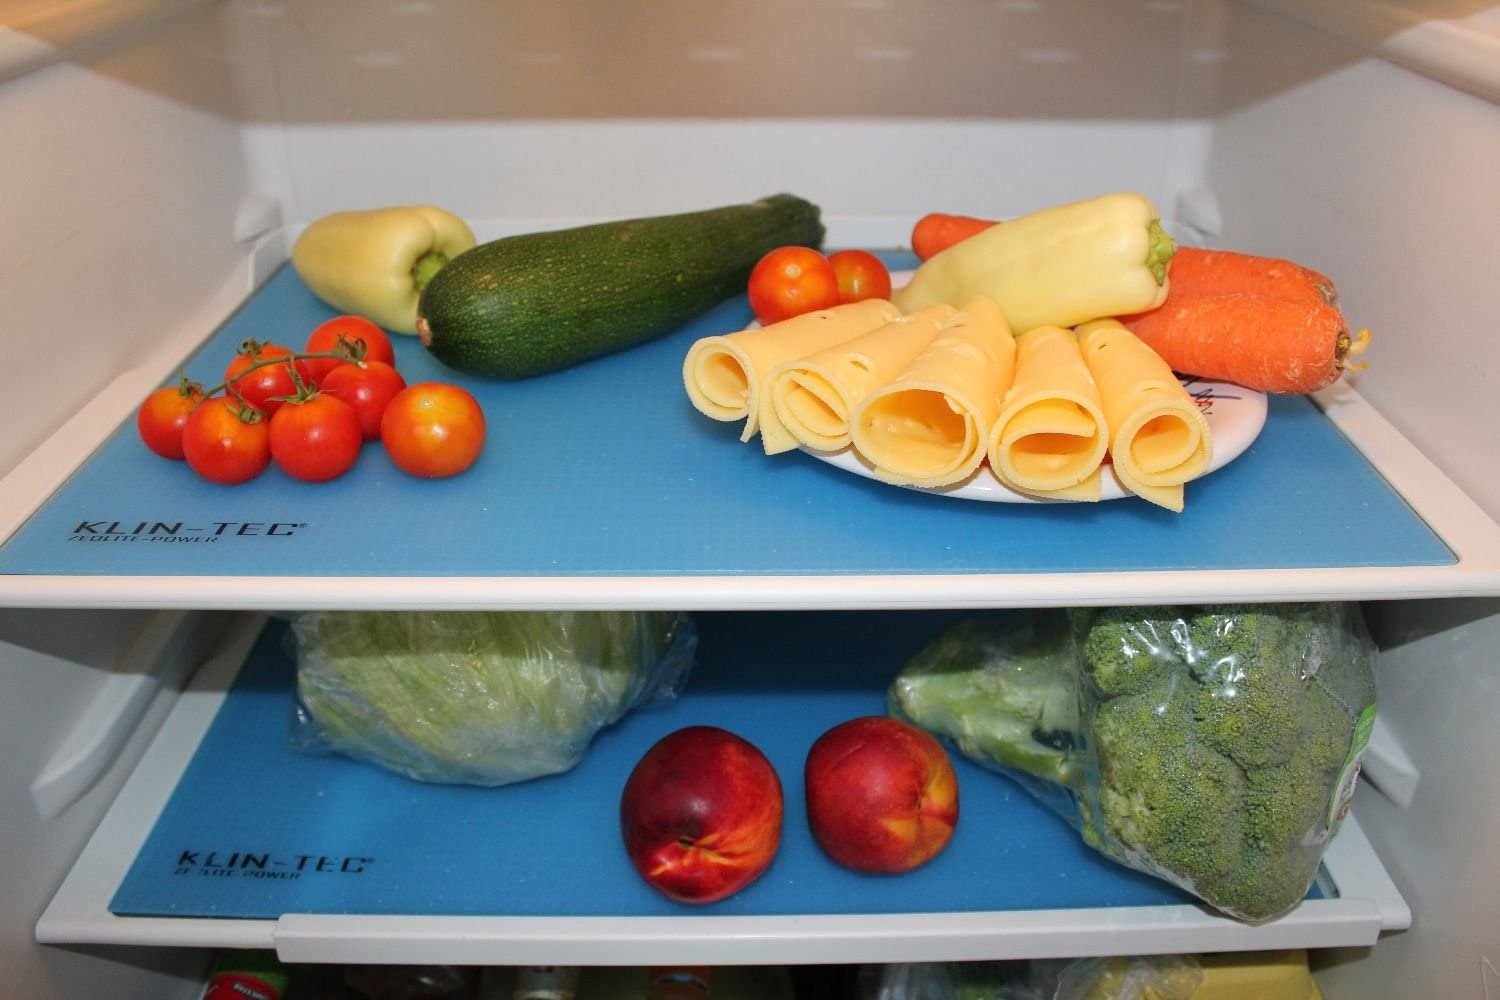 Refridgerator Mat - Fridge Mat Keeps food fresher for longer non-slip 3 Pack